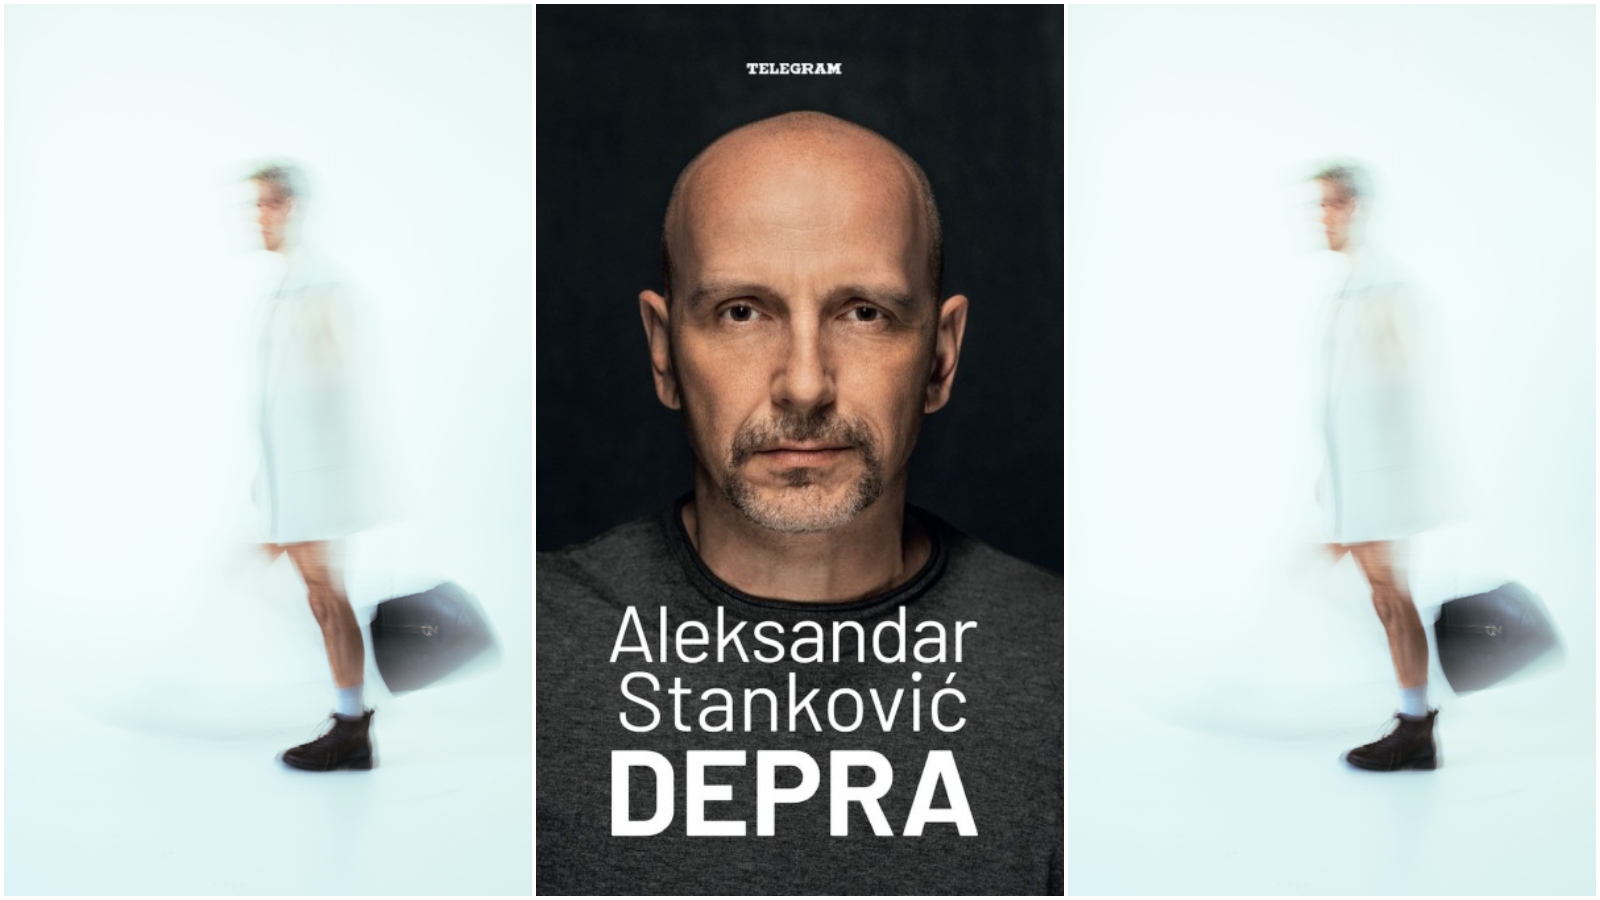 Aleksandar Stanković napisao je knjigu u kojoj iskreno progovara o borbi s depresijom